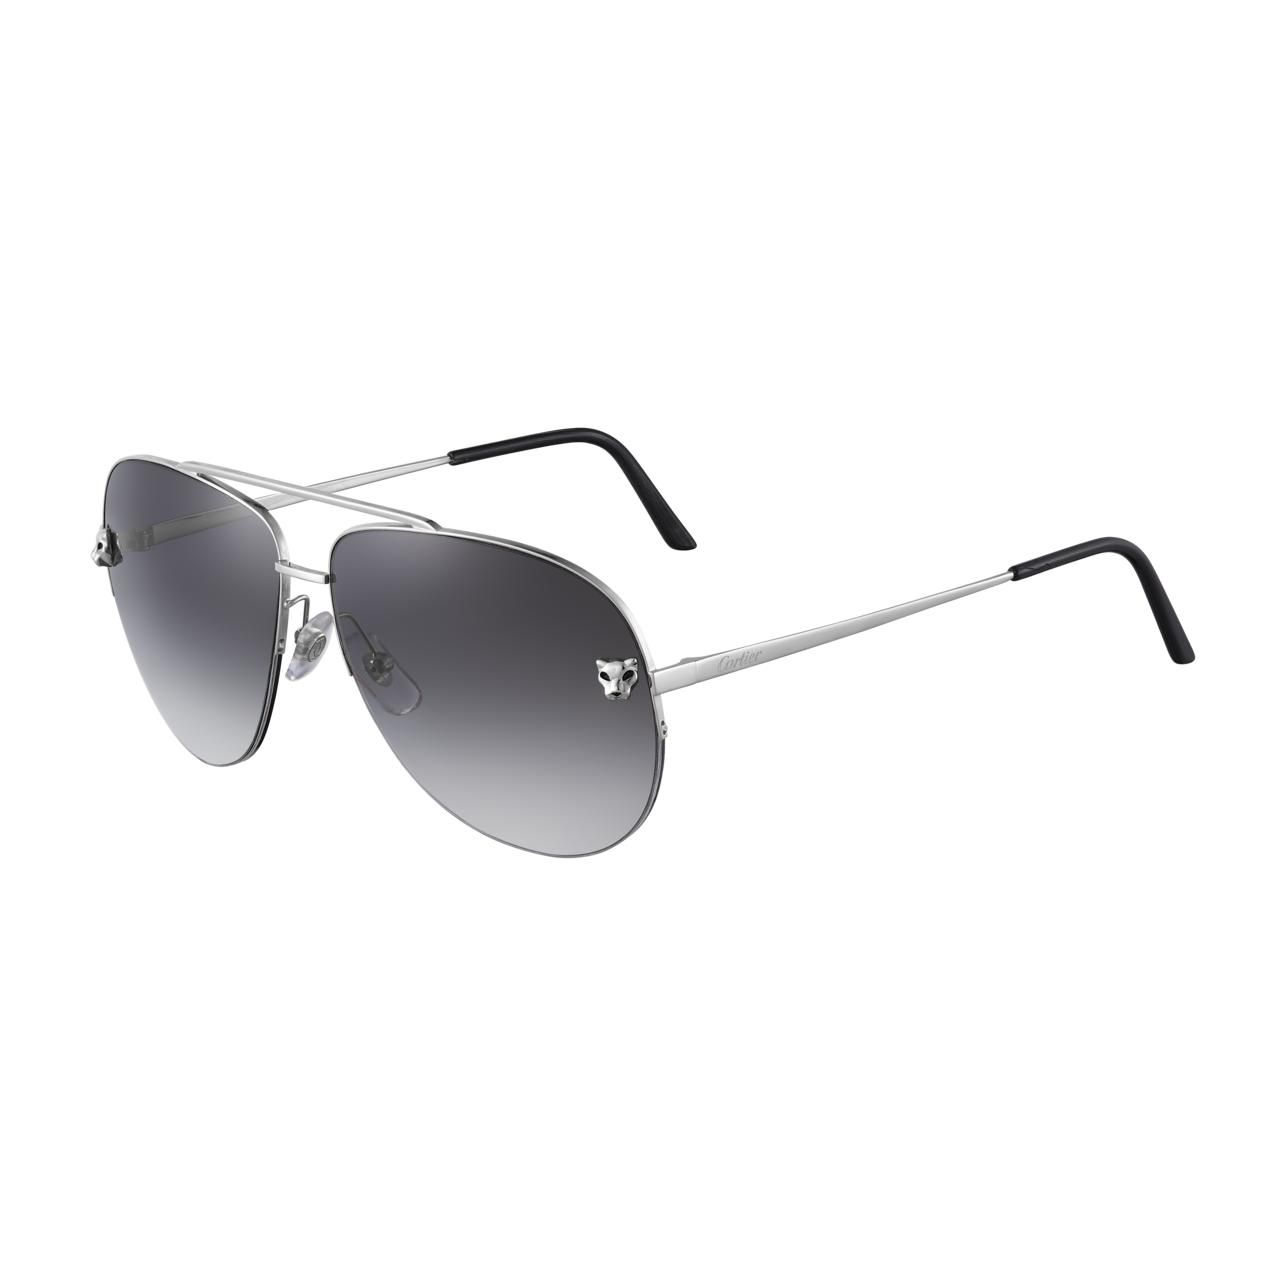 CT00065s Pilot Sunglasses 3 - size 60